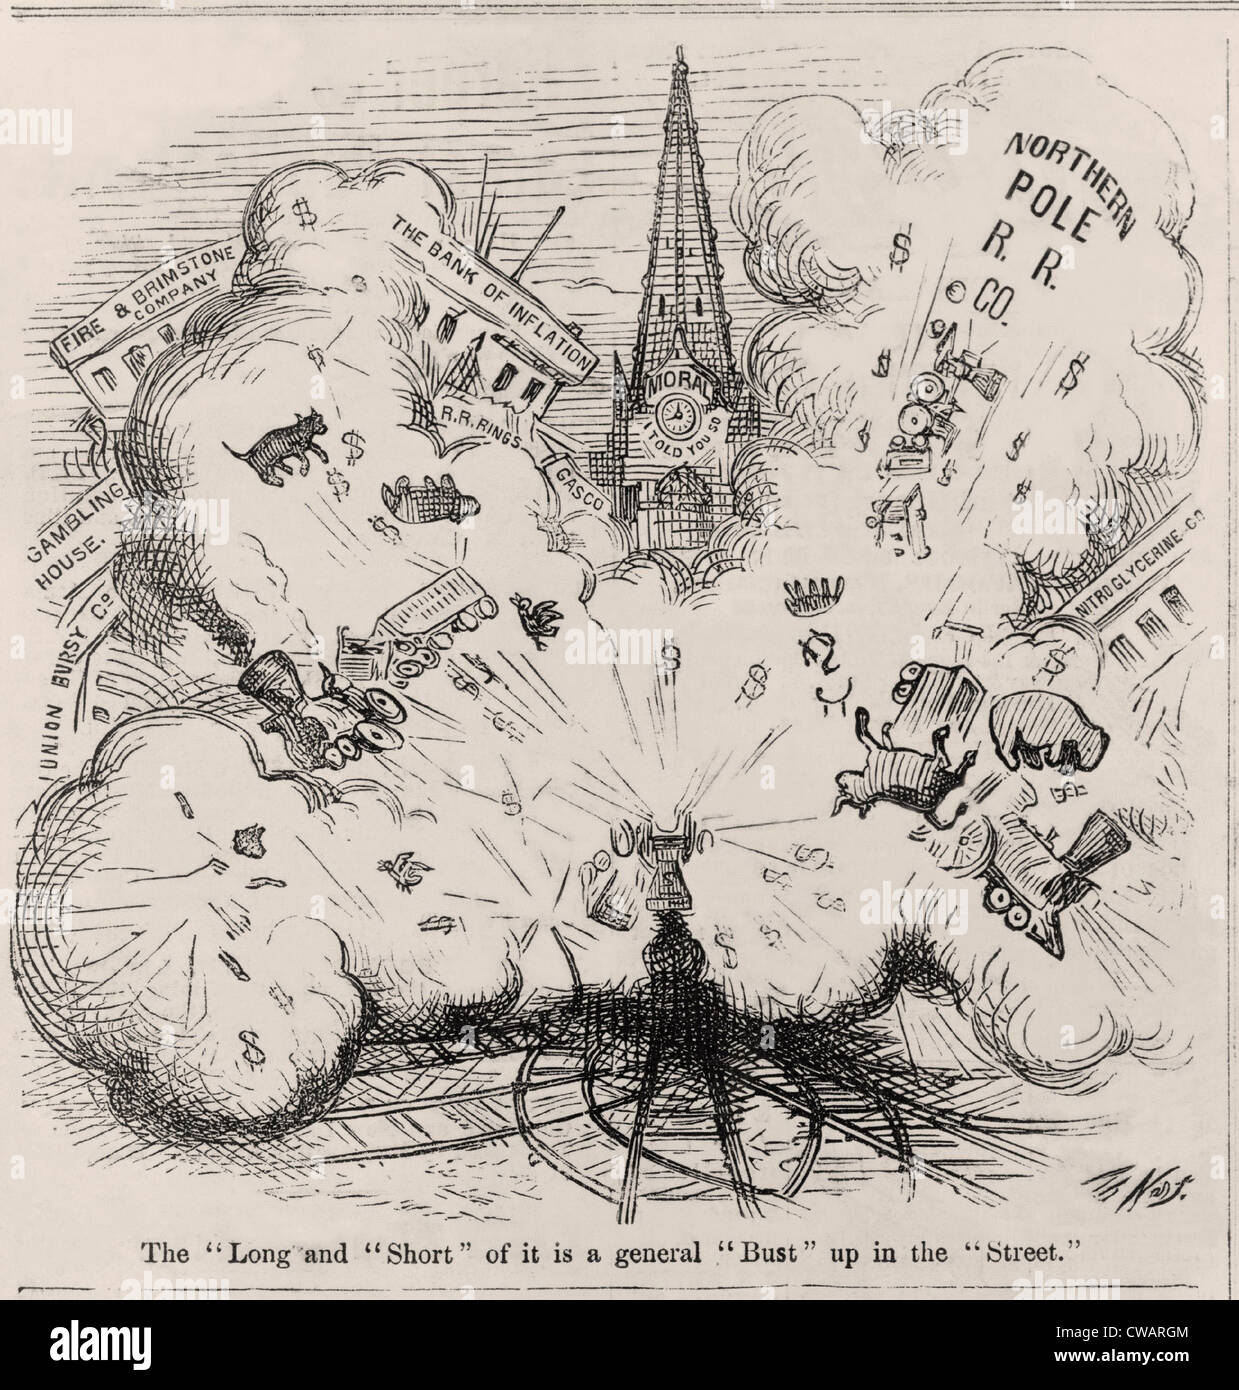 Il panico finanziario del 1873. Thomas Nast cartone animato che mostra un esplosione che soffia su polo nord R.R. Co., la Banca di inflazione, Foto Stock